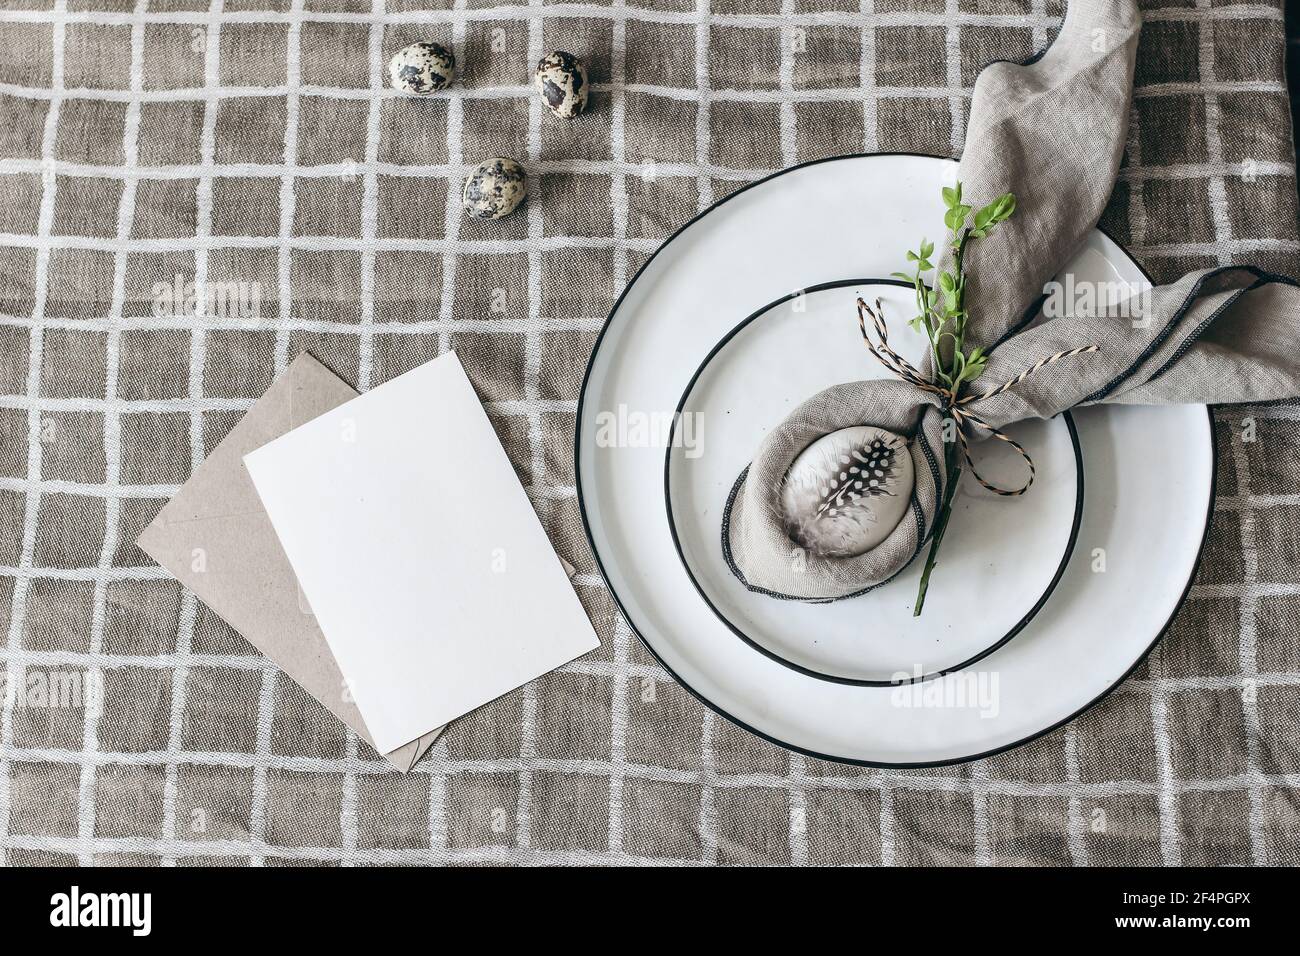 Ostern dekorative Tischdekoration. Frühlingsstill-Leben mit Grußkarte Mockup, Wachtel und Hühnereier. Teller, Serviettenfaltdeko auf beigefarbenem Leinenreiter Stockfoto